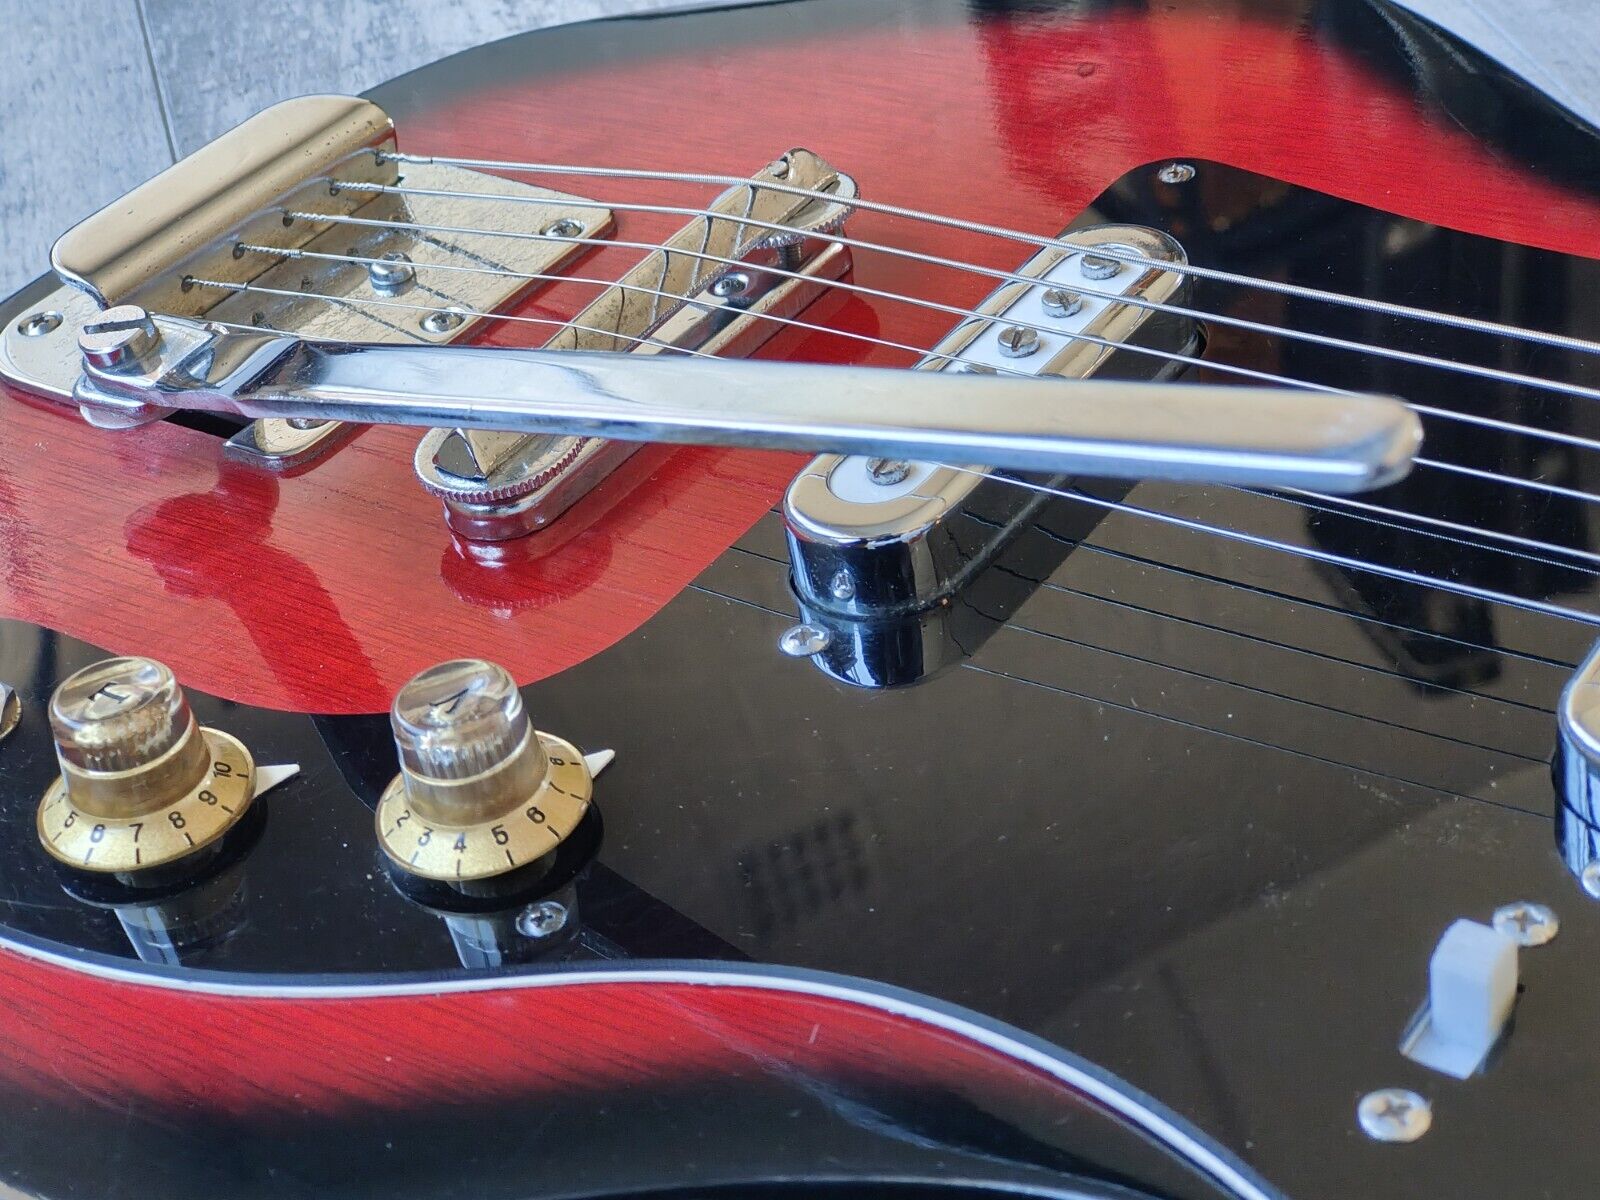 1960's Rokkomann Japan EG-2 Vintage Guitar (Red Sunburst)